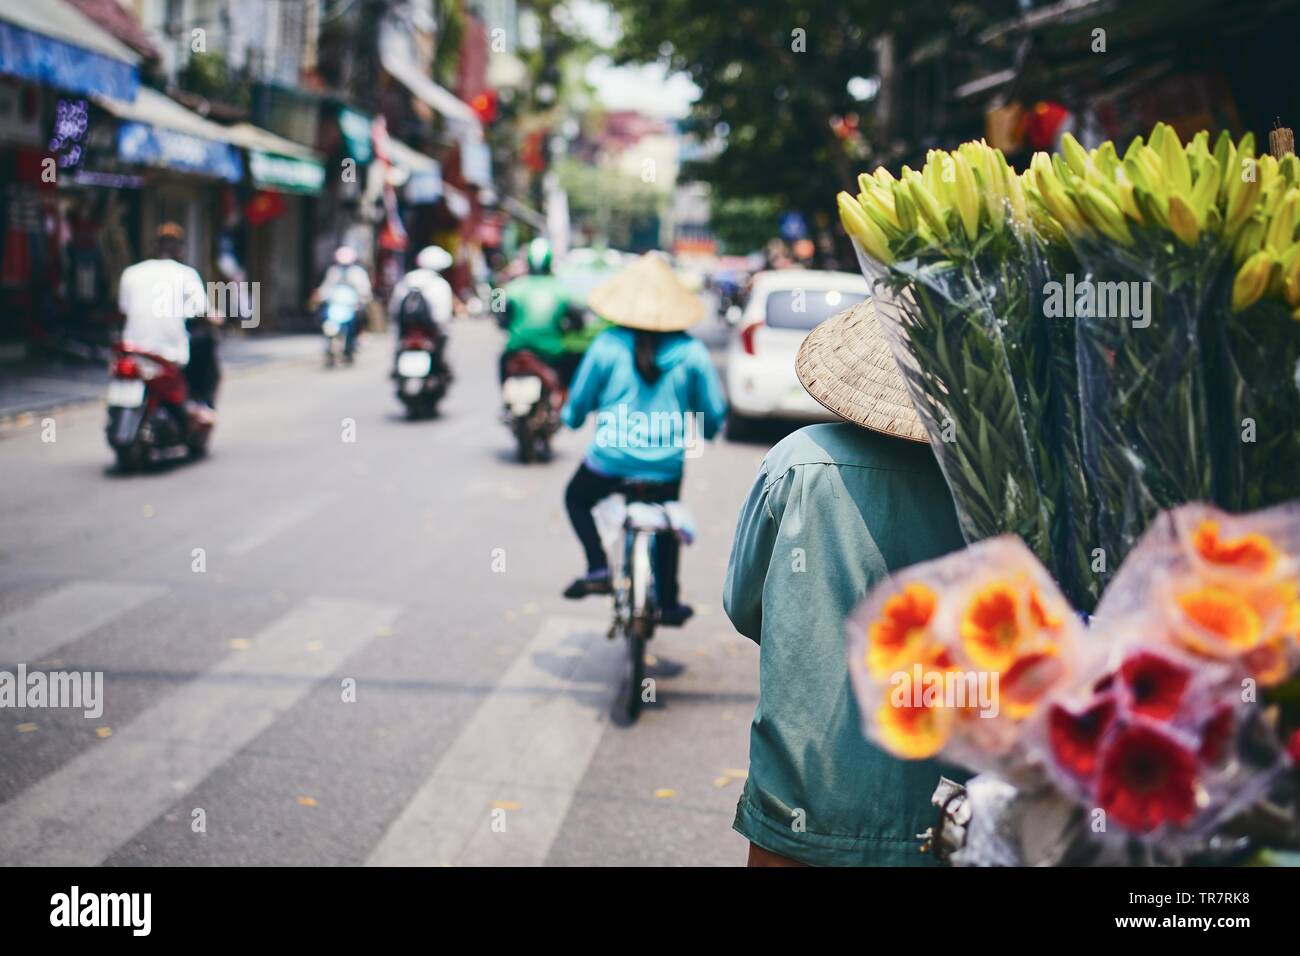 La vie en ville dans la rue de vieux quartier de Hanoi. Vendeuse de fleurs dans un chapeau conique, Vietnam. Banque D'Images